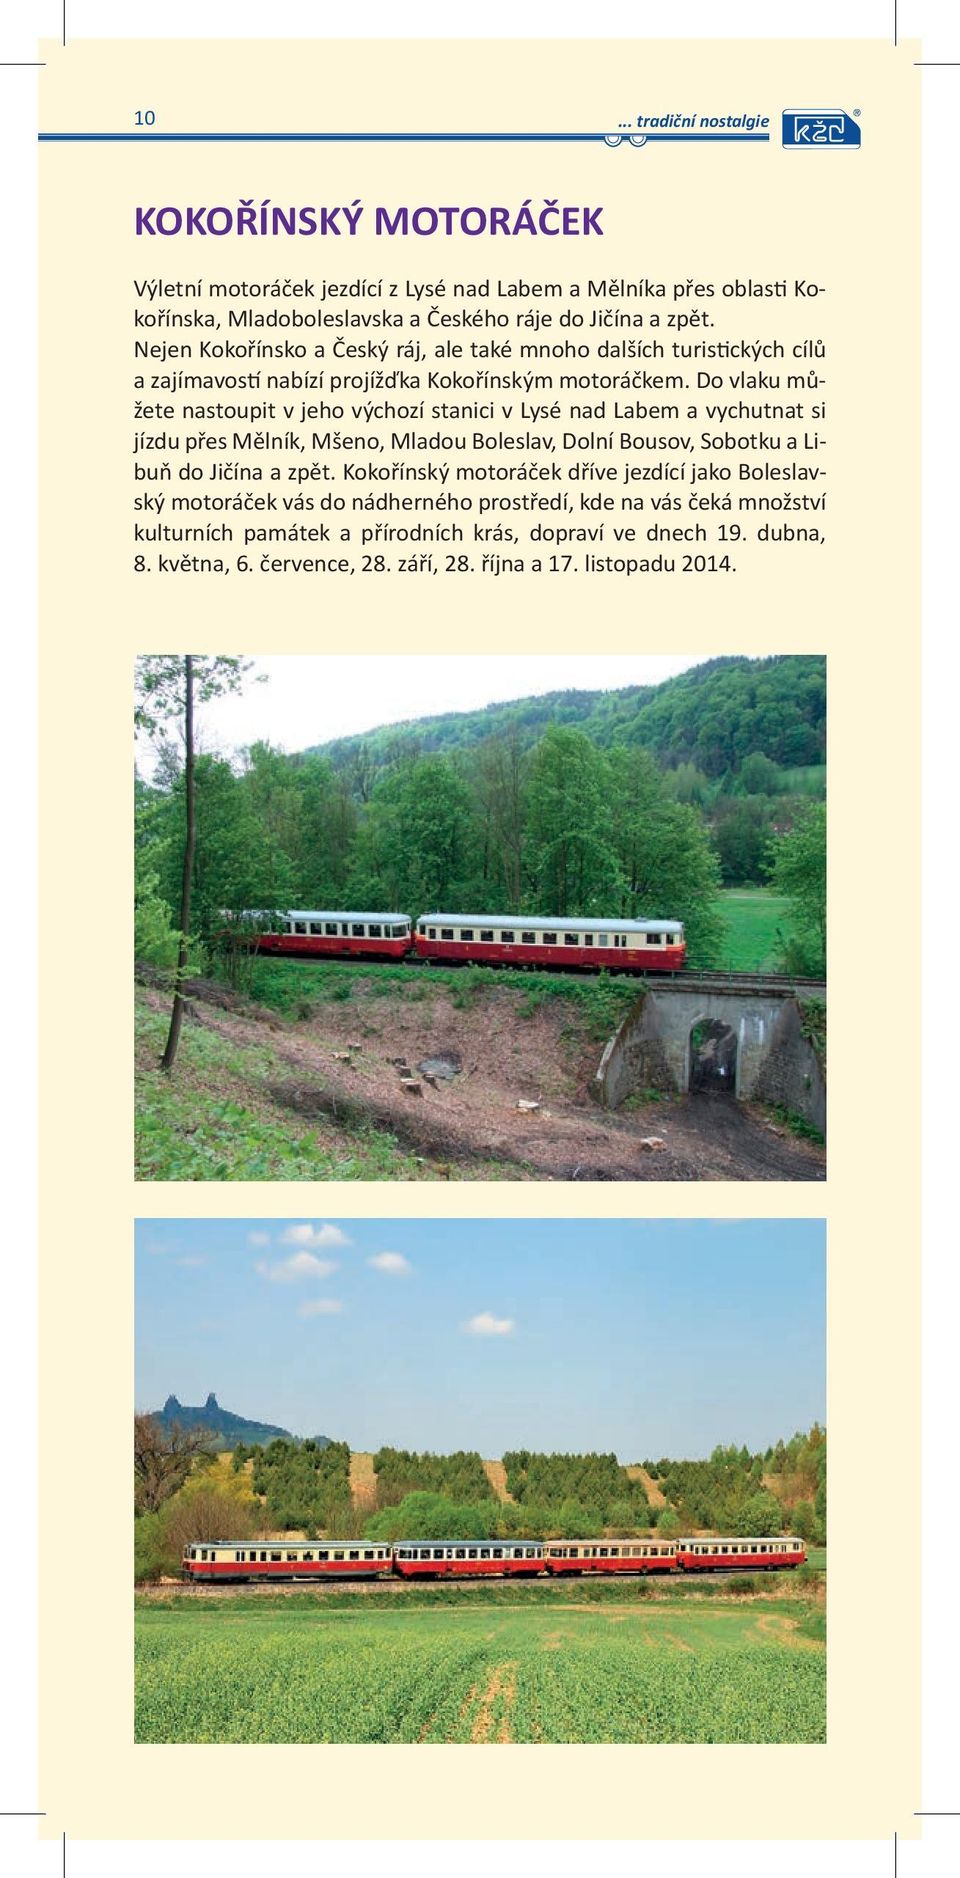 Do vlaku můžete nastoupit v jeho výchozí stanici v Lysé nad Labem a vychutnat si jízdu přes Mělník, Mšeno, Mladou Boleslav, Dolní Bousov, Sobotku a Libuň do Jičína a zpět.